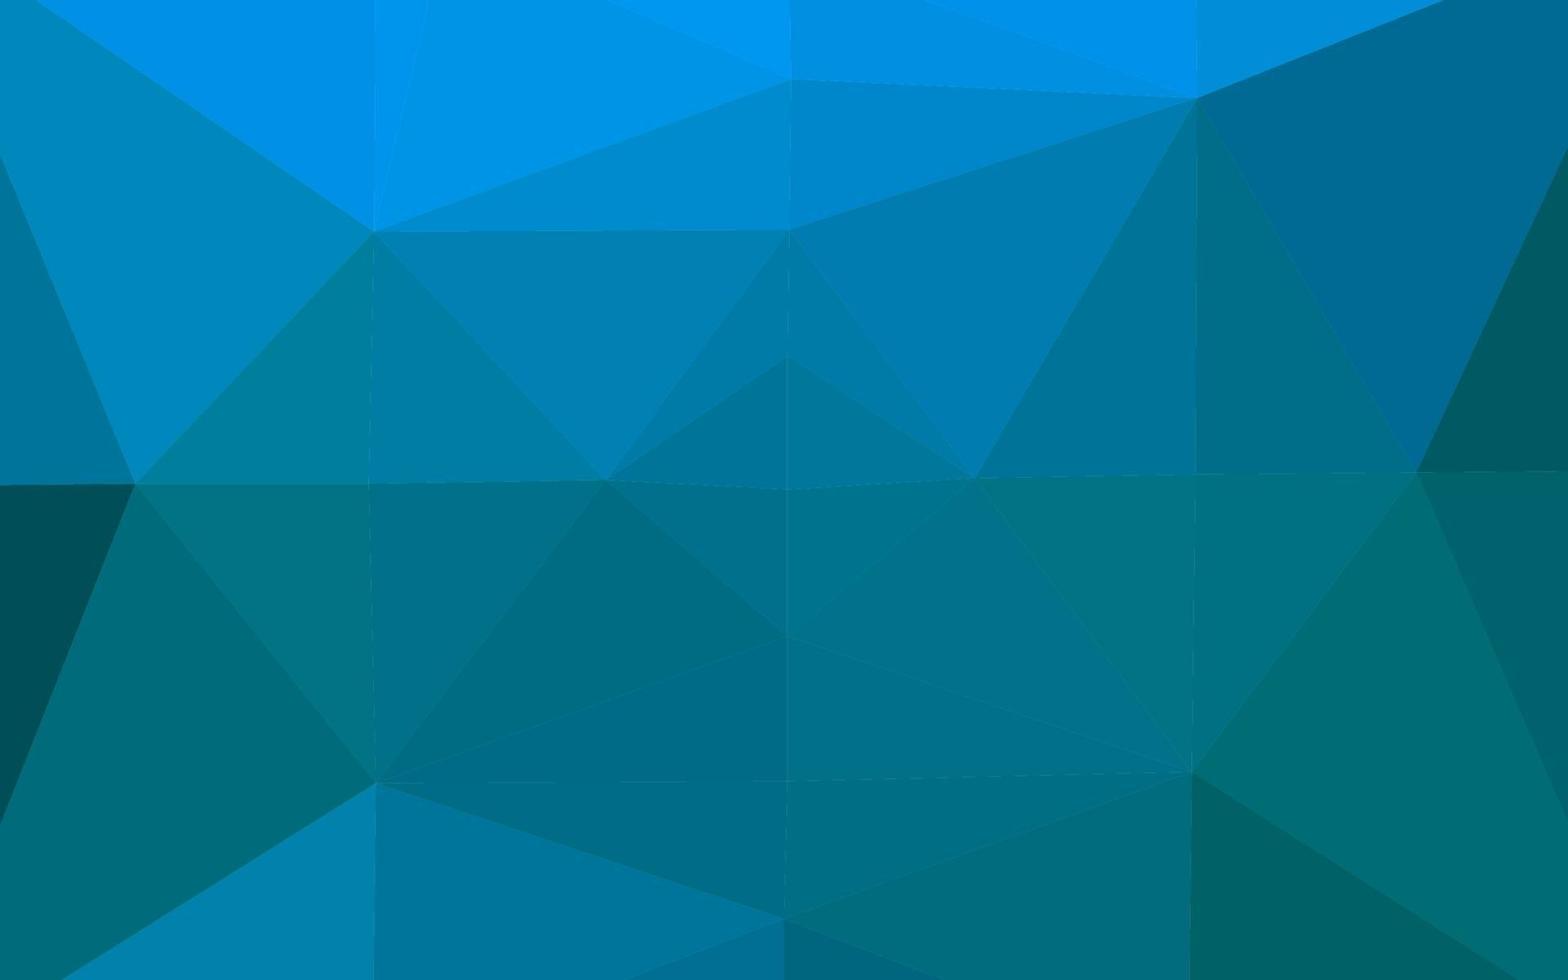 toile de fond abstrait polygone vecteur bleu clair.